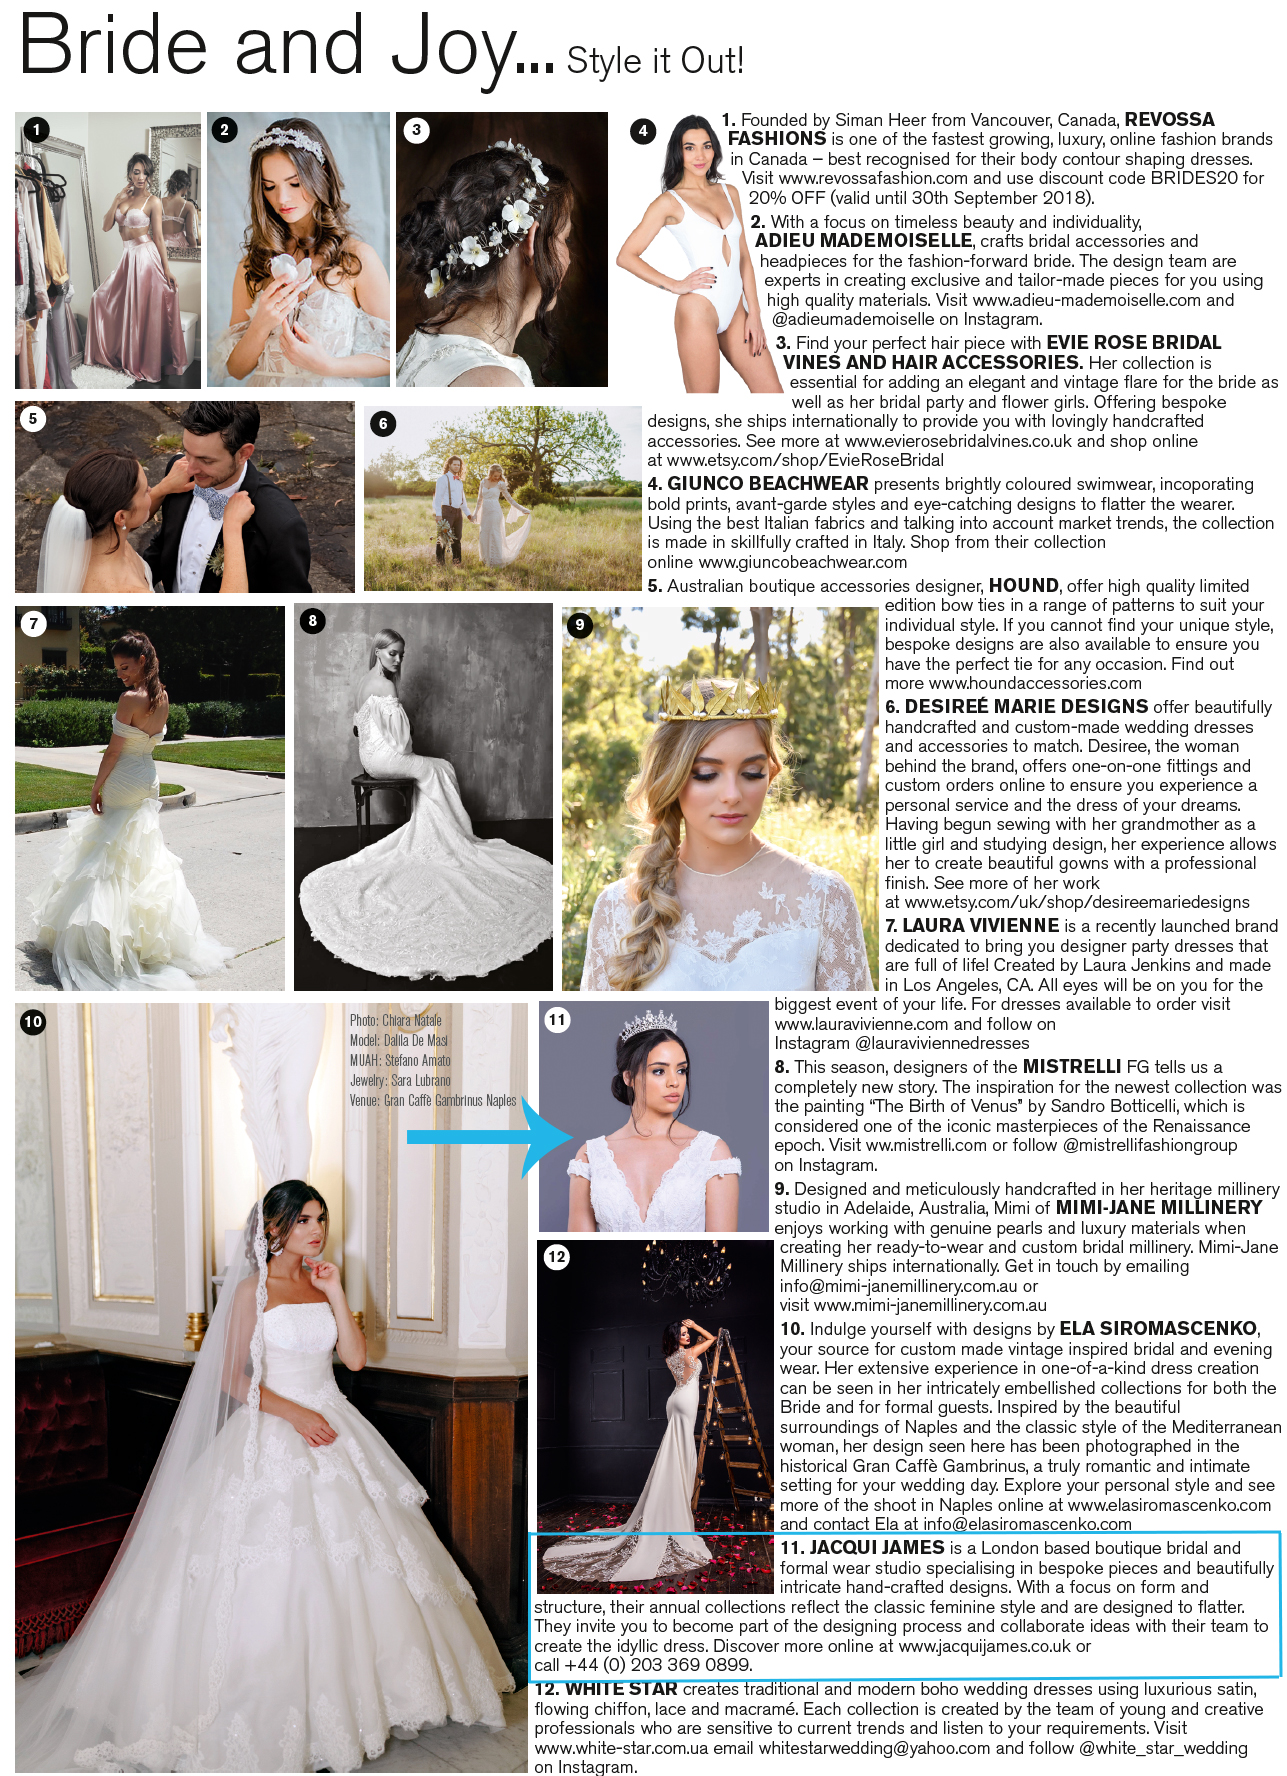 Conde Nast Brides Magazine feature- Jacqui James